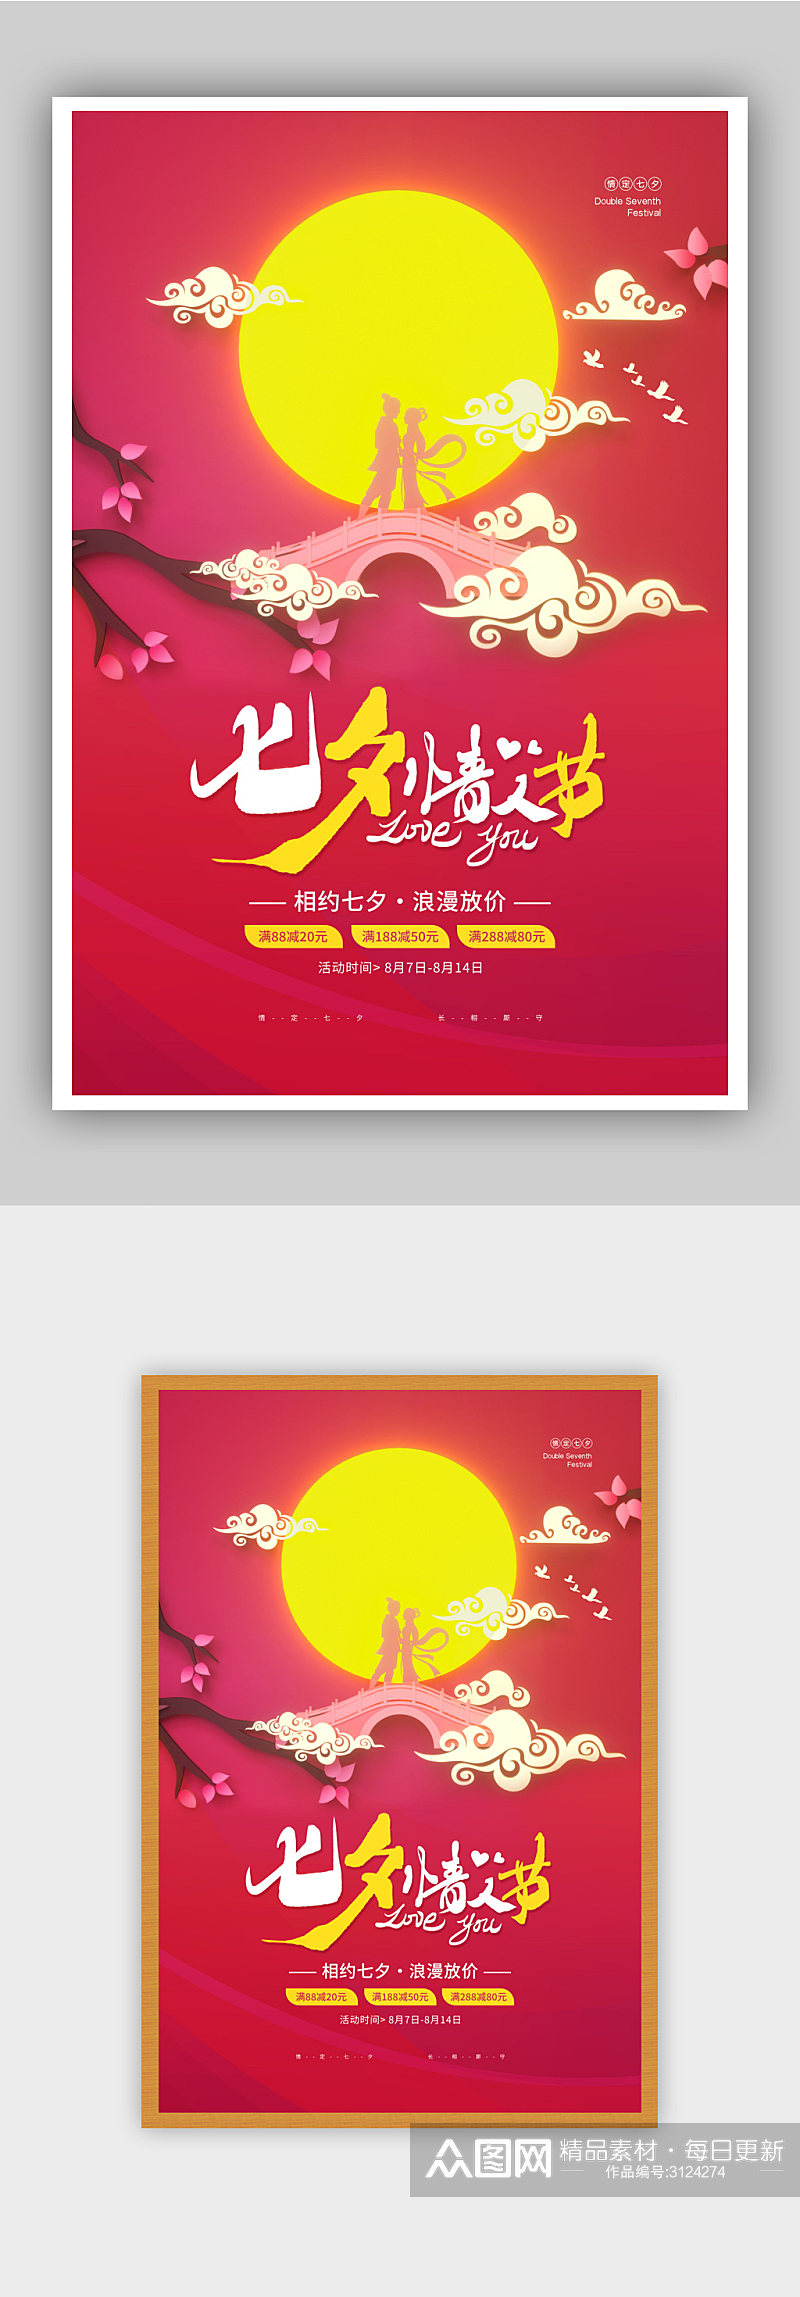 简约唯美七夕情人节促销宣传海报素材